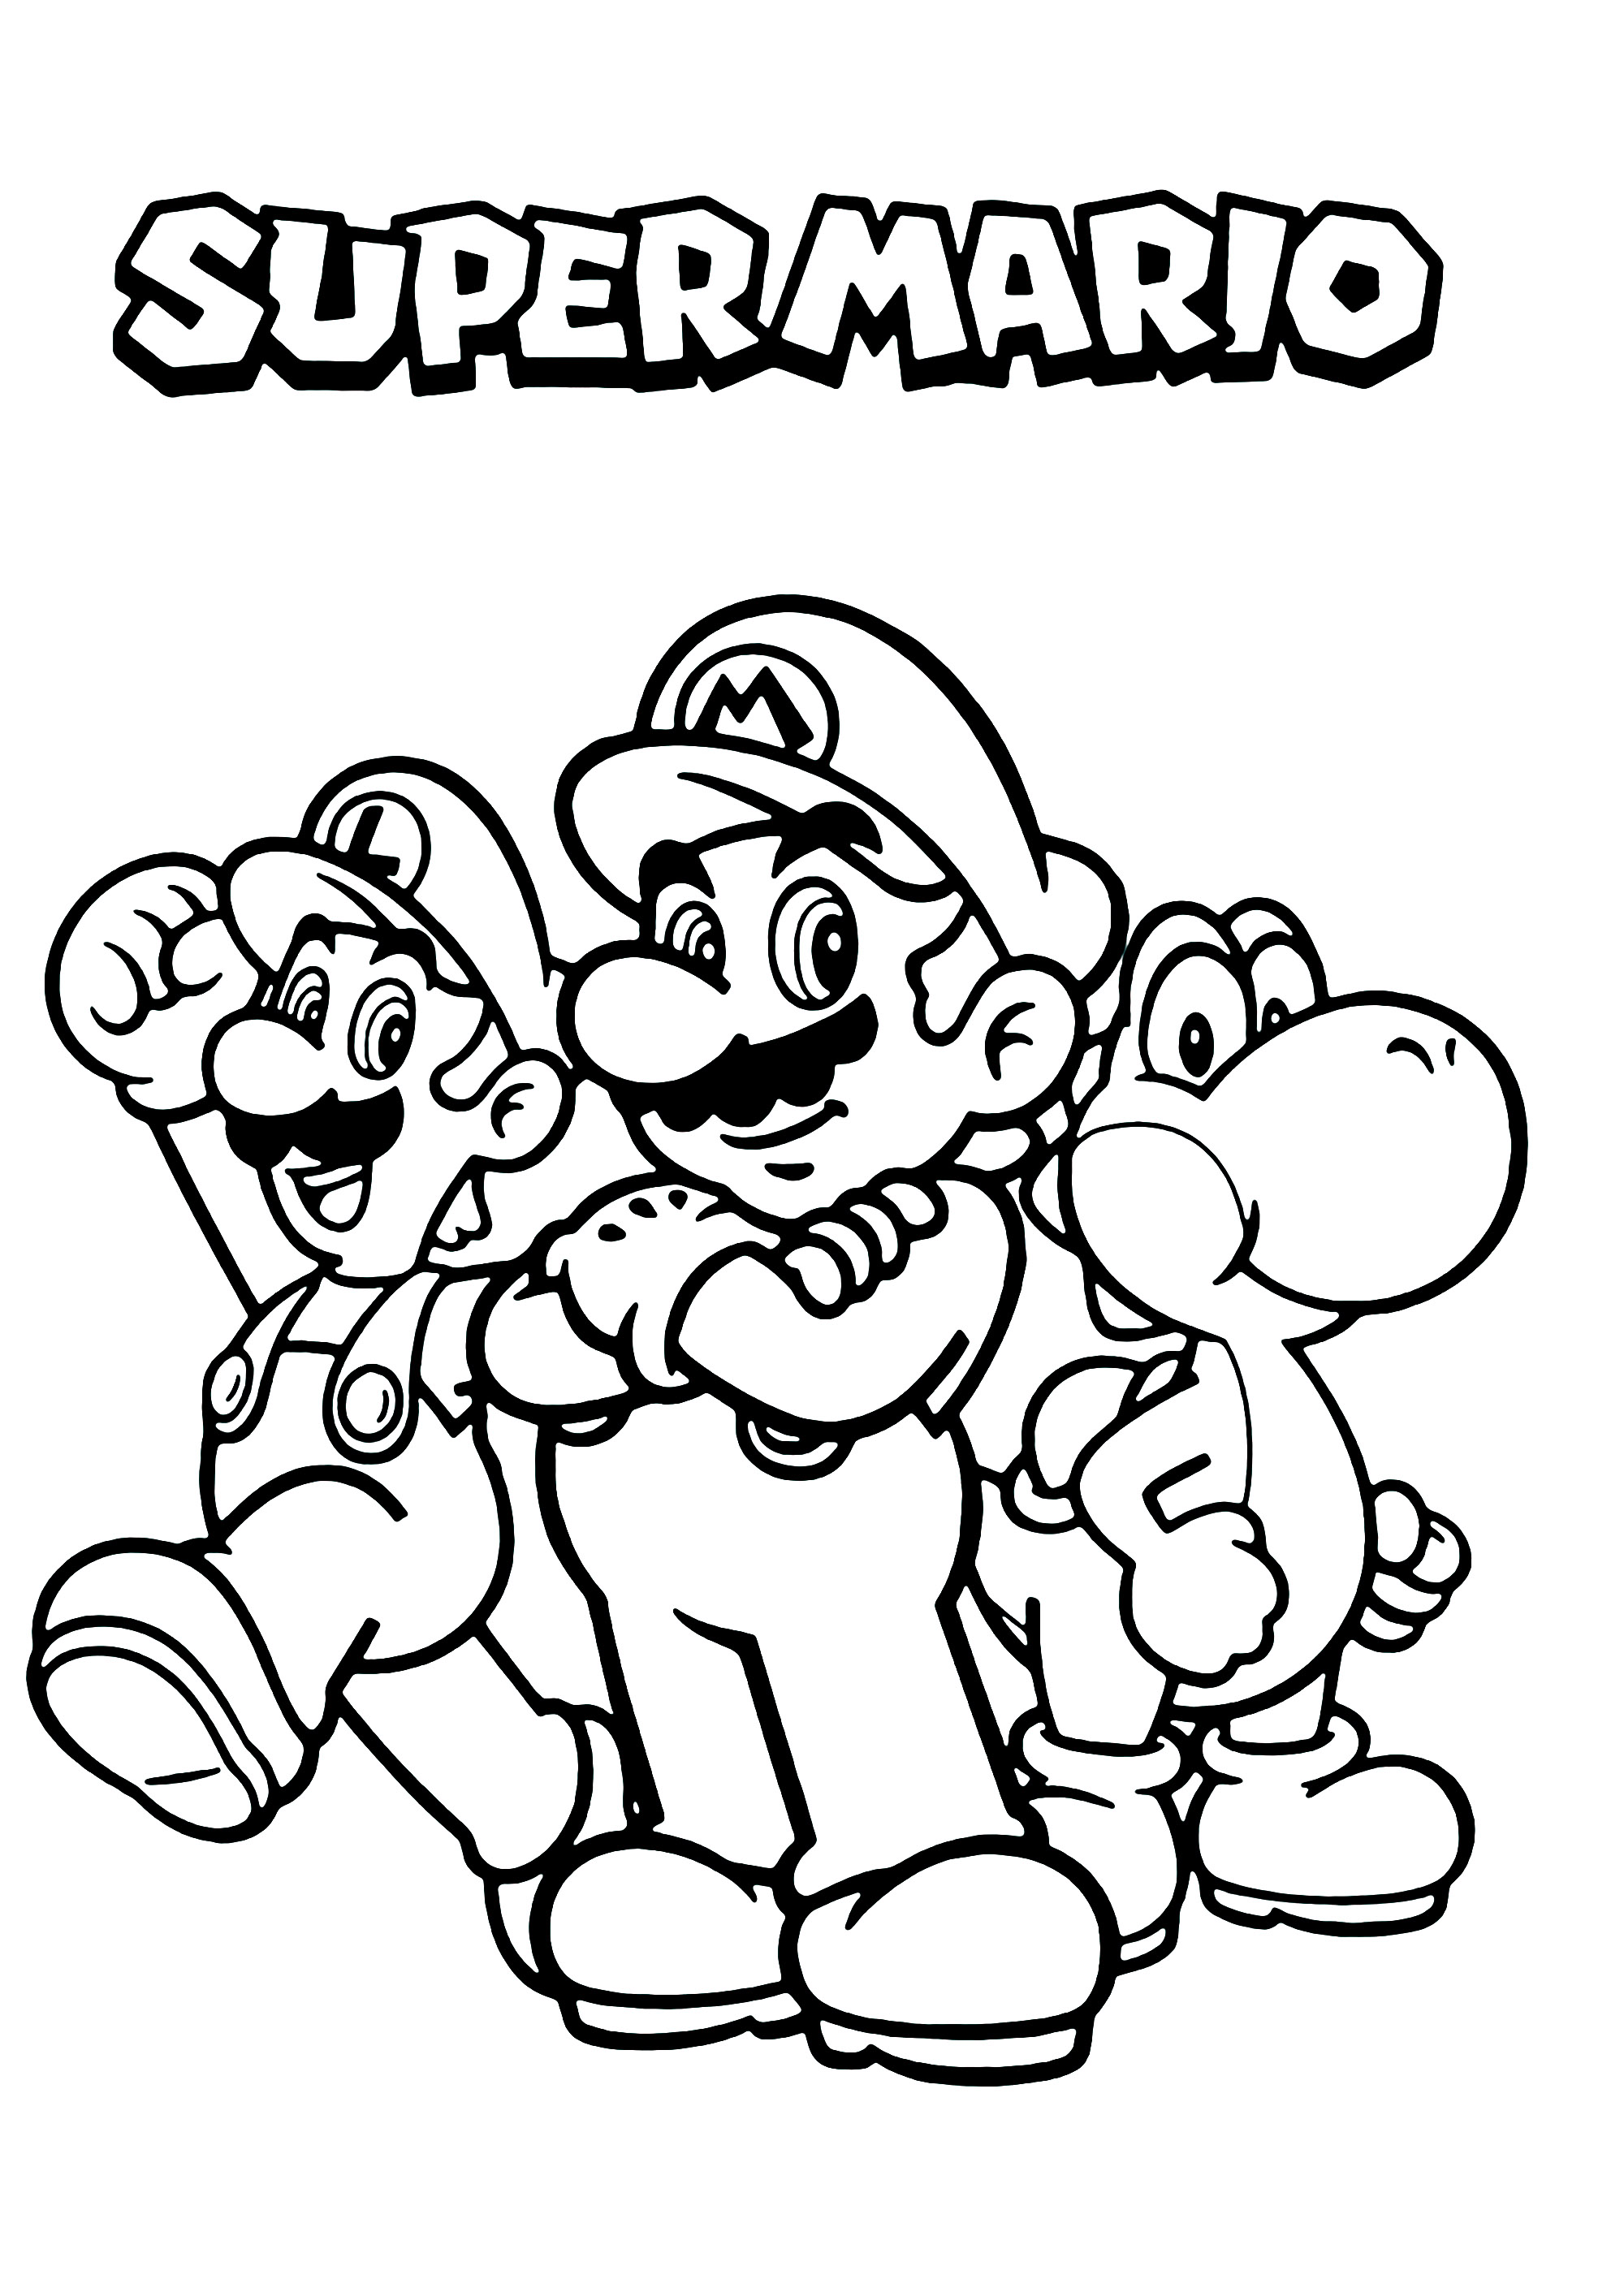 Mario luigi and yoshi with super mario logo